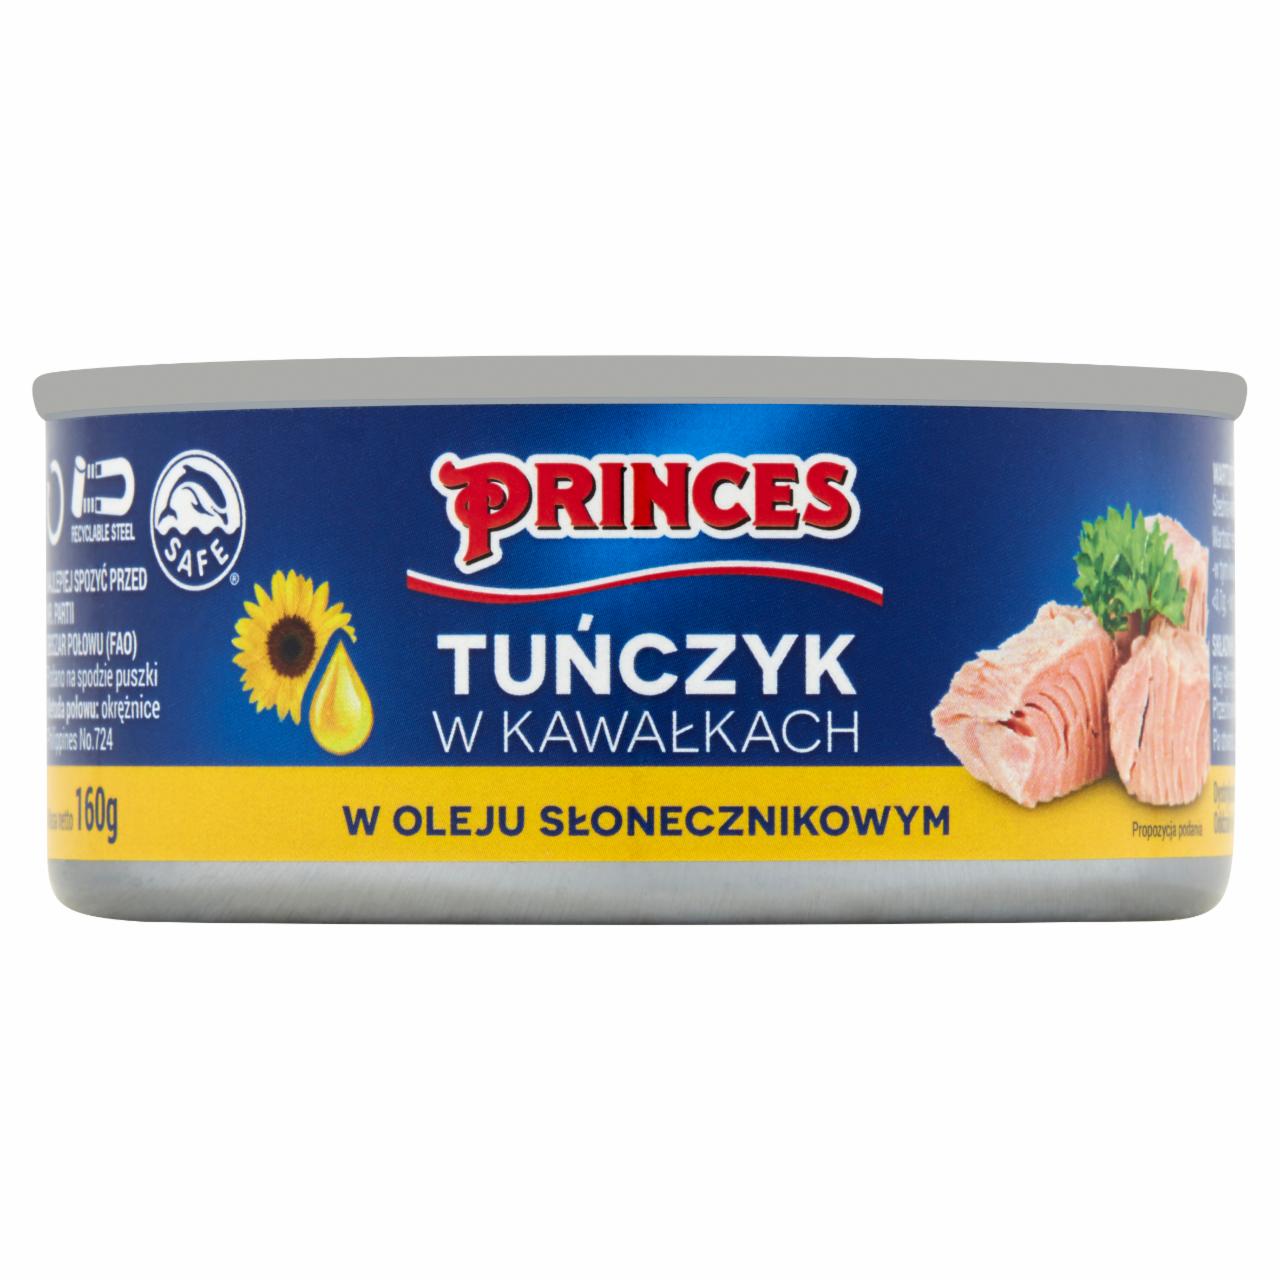 Zdjęcia - Princes Tuńczyk w kawałkach w oleju słonecznikowym 160 g